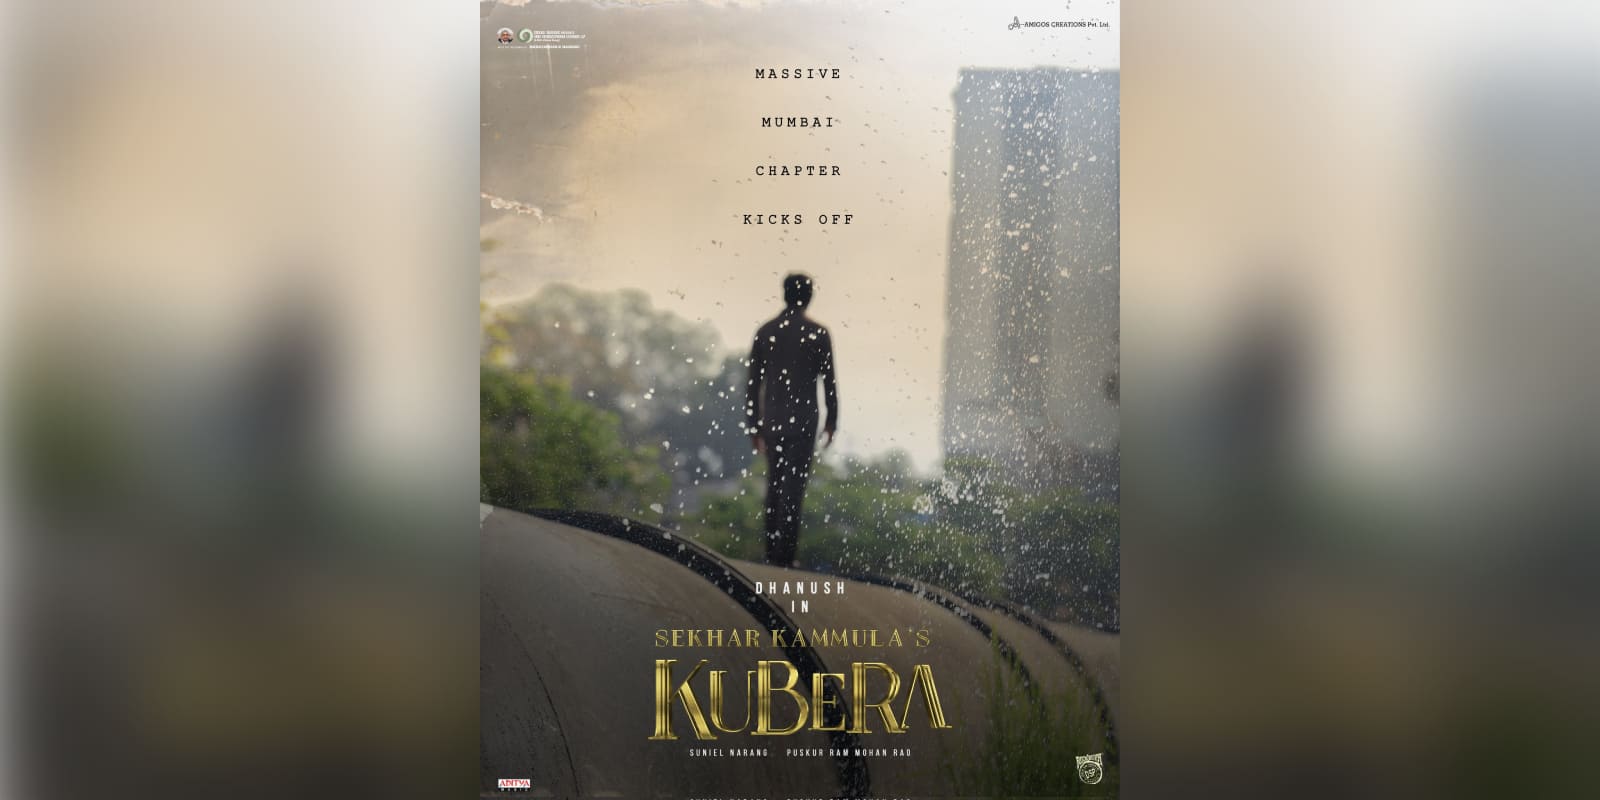 Mumbai schedule of Kubera kicks off